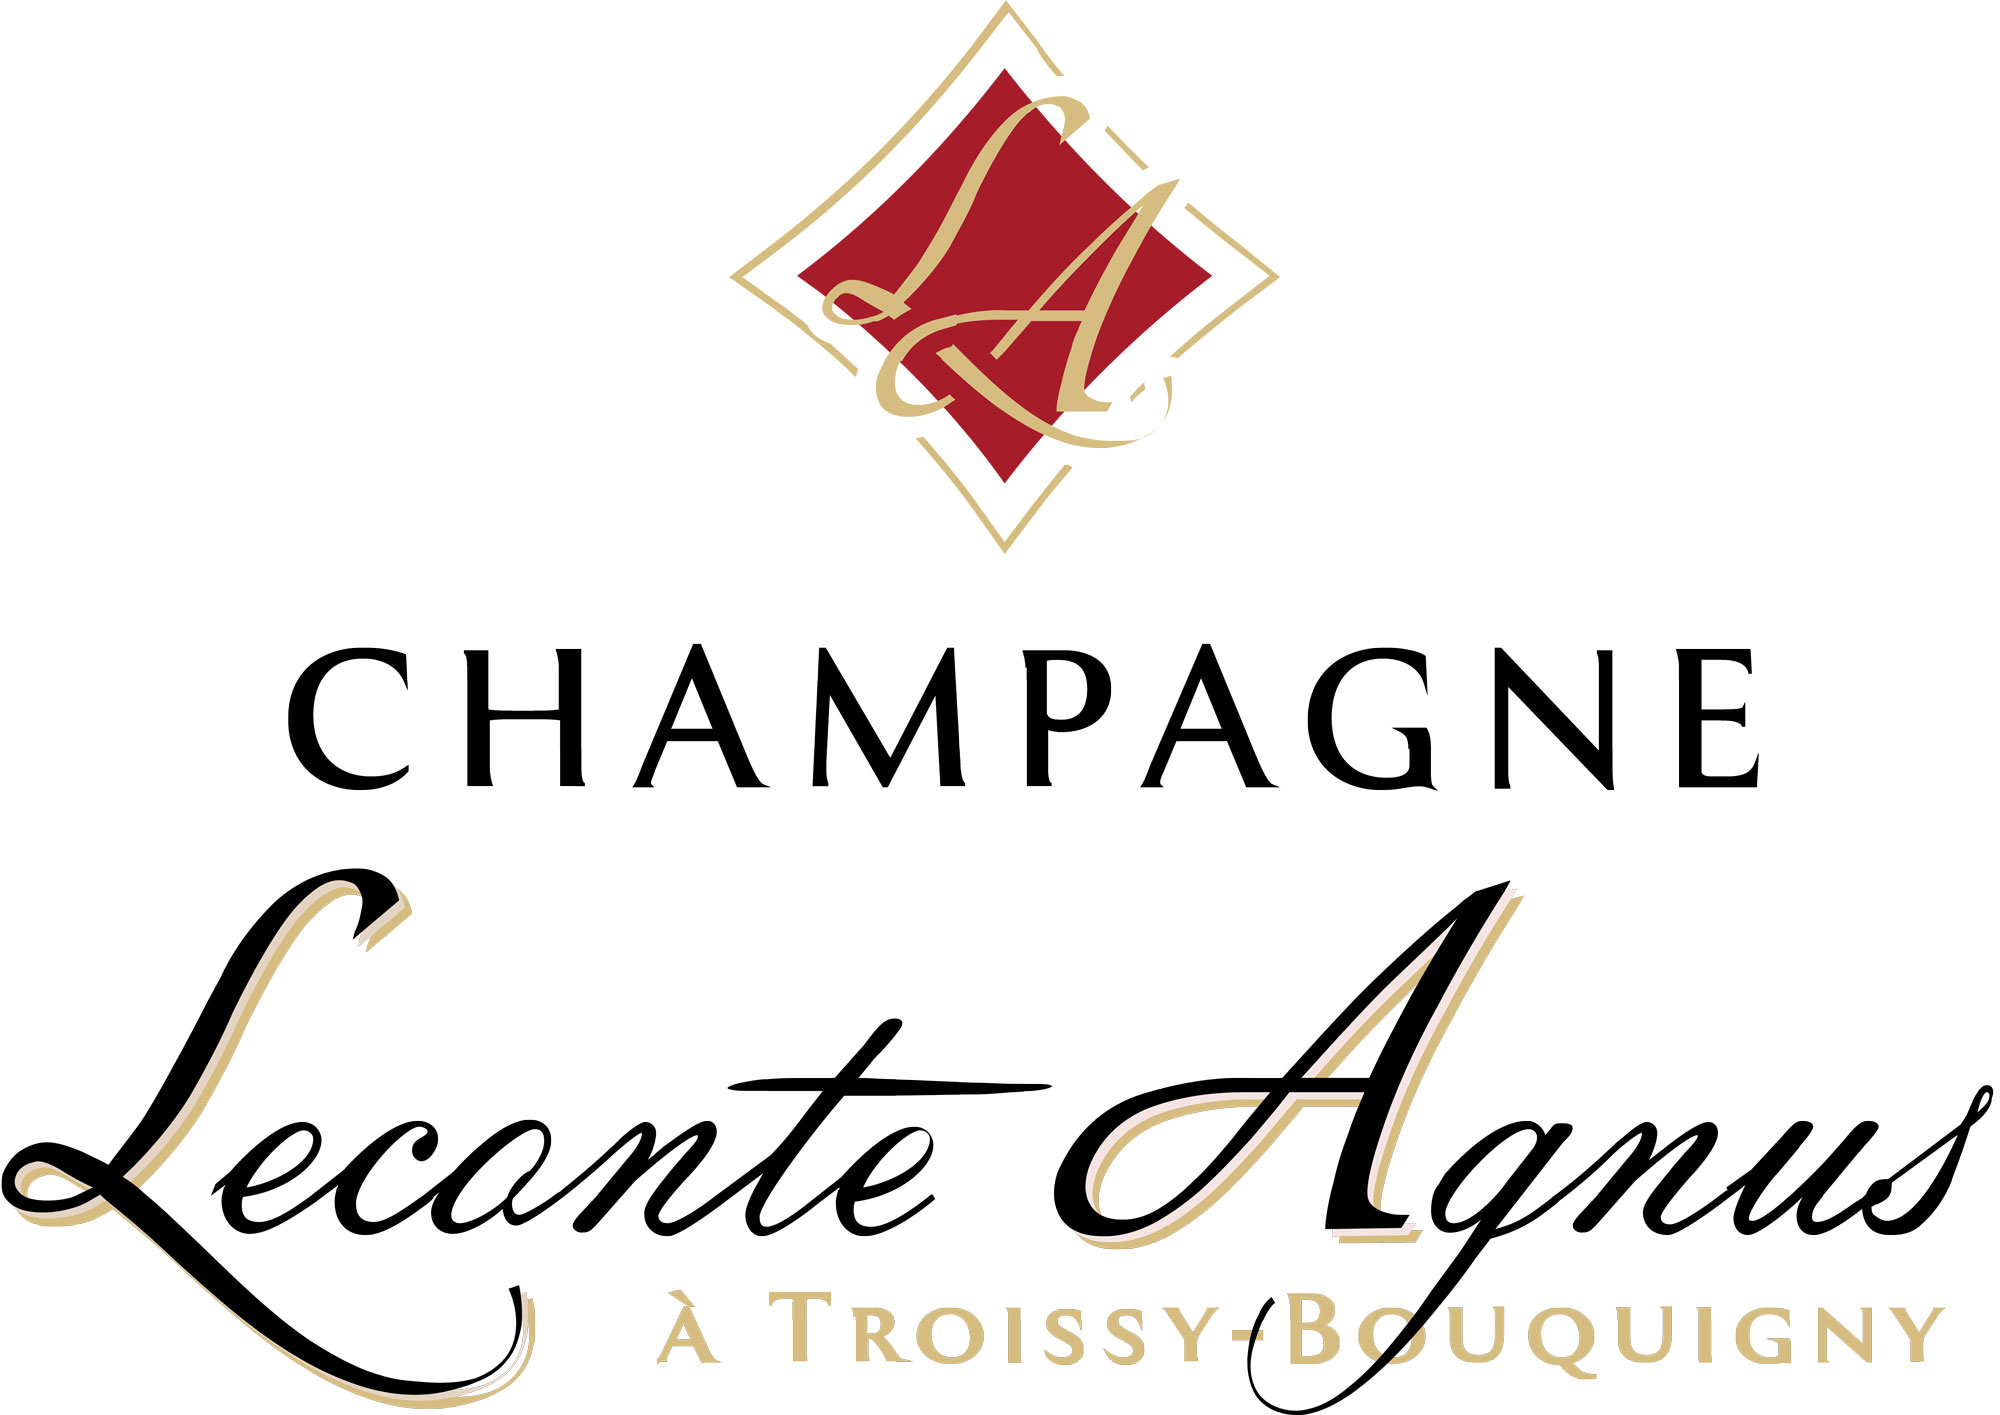 Champagne Leconte-Agnus